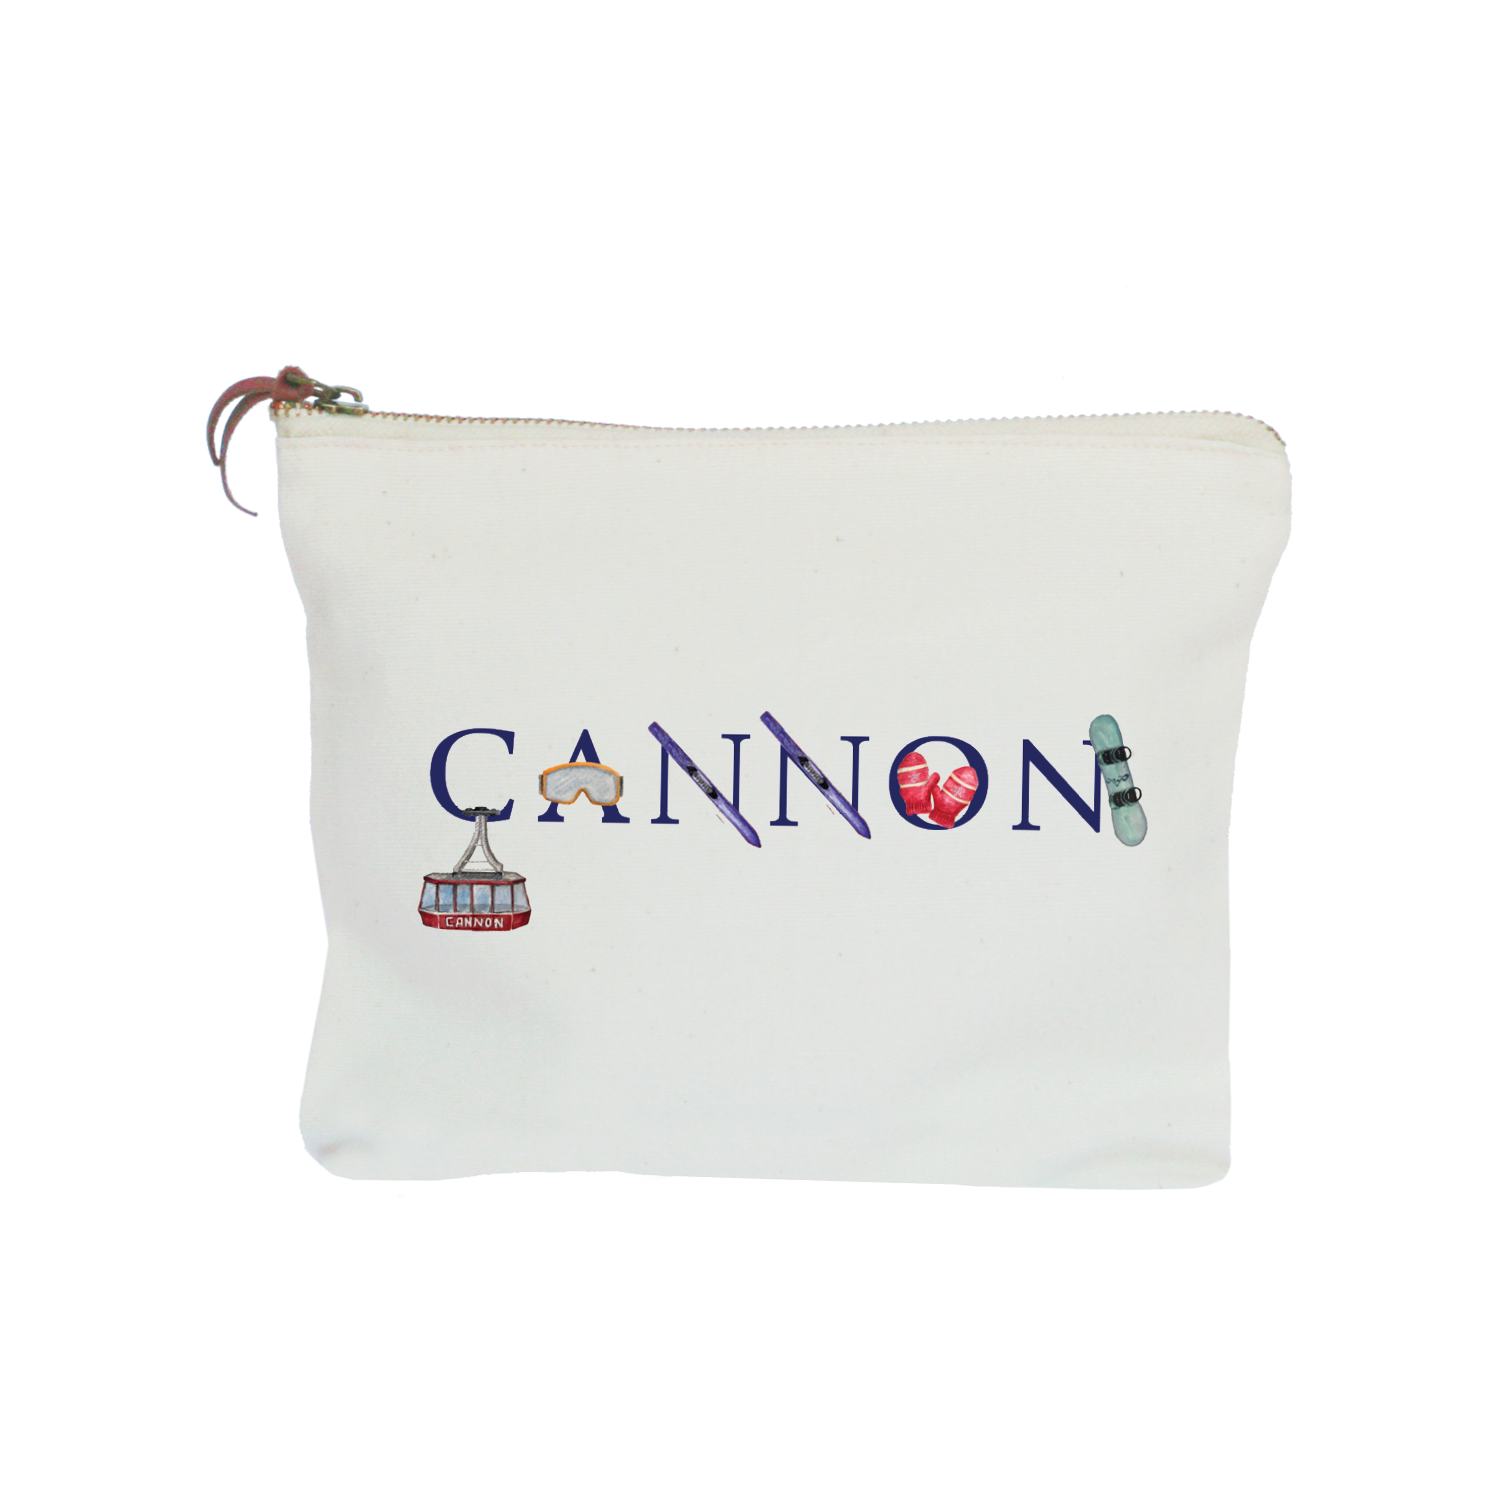 cannon zipper pouch